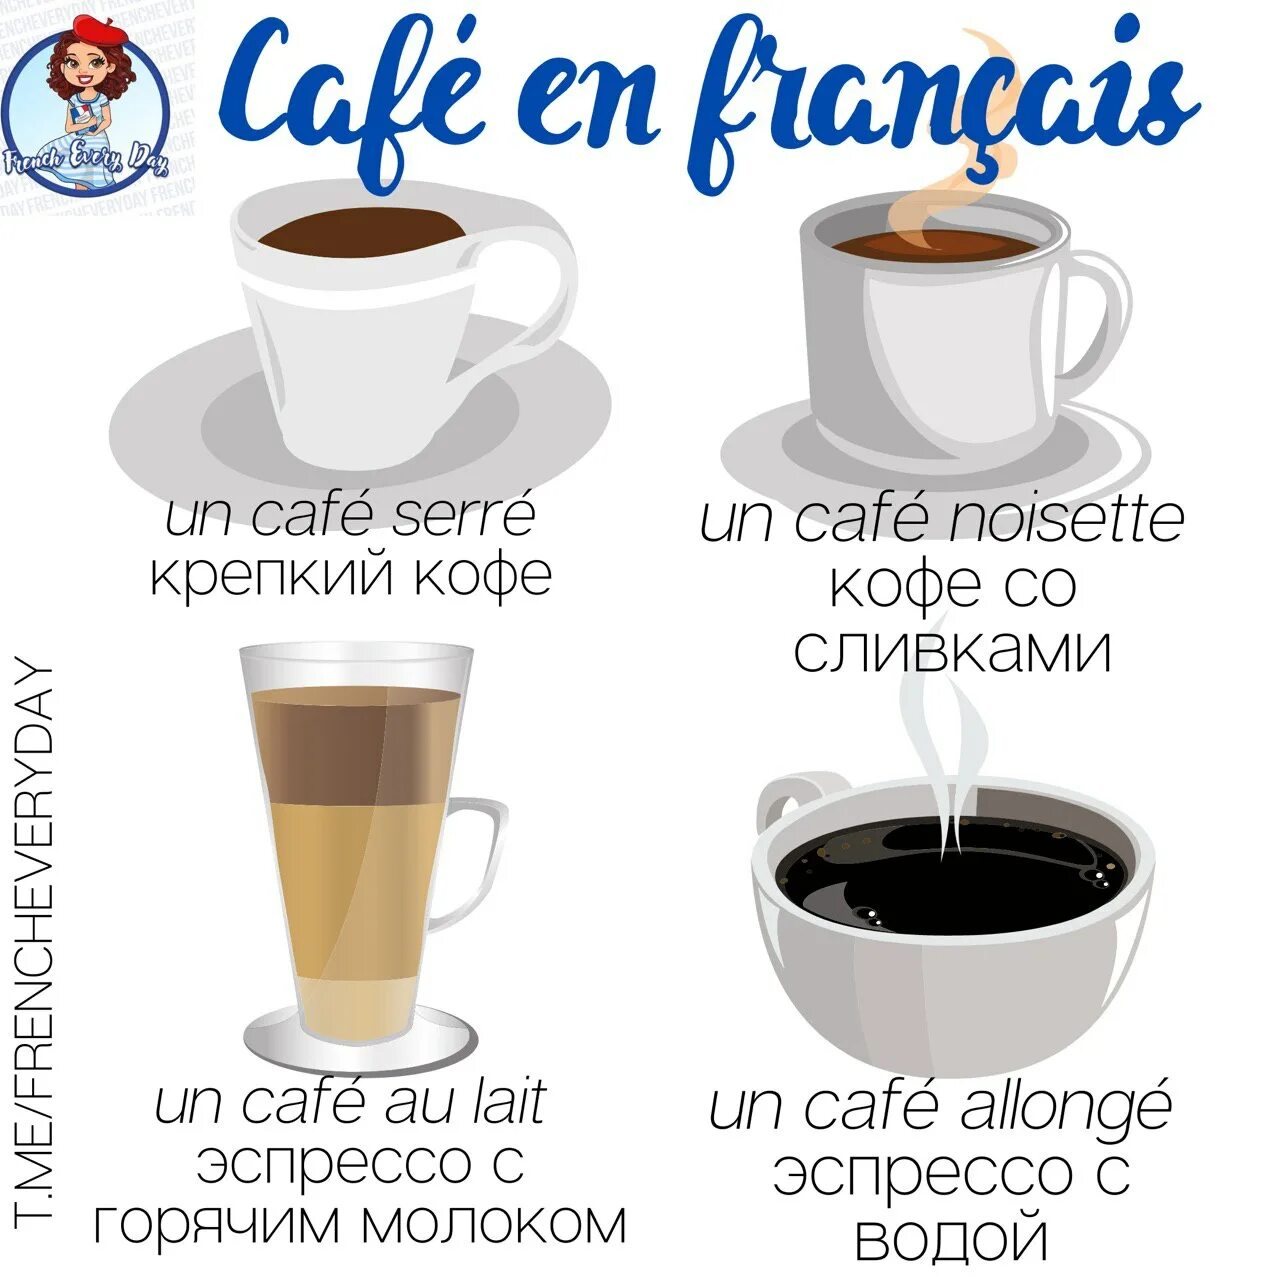 Аллонж кофе. Кофе le Cafe. Cafe au lait что это за кофе.